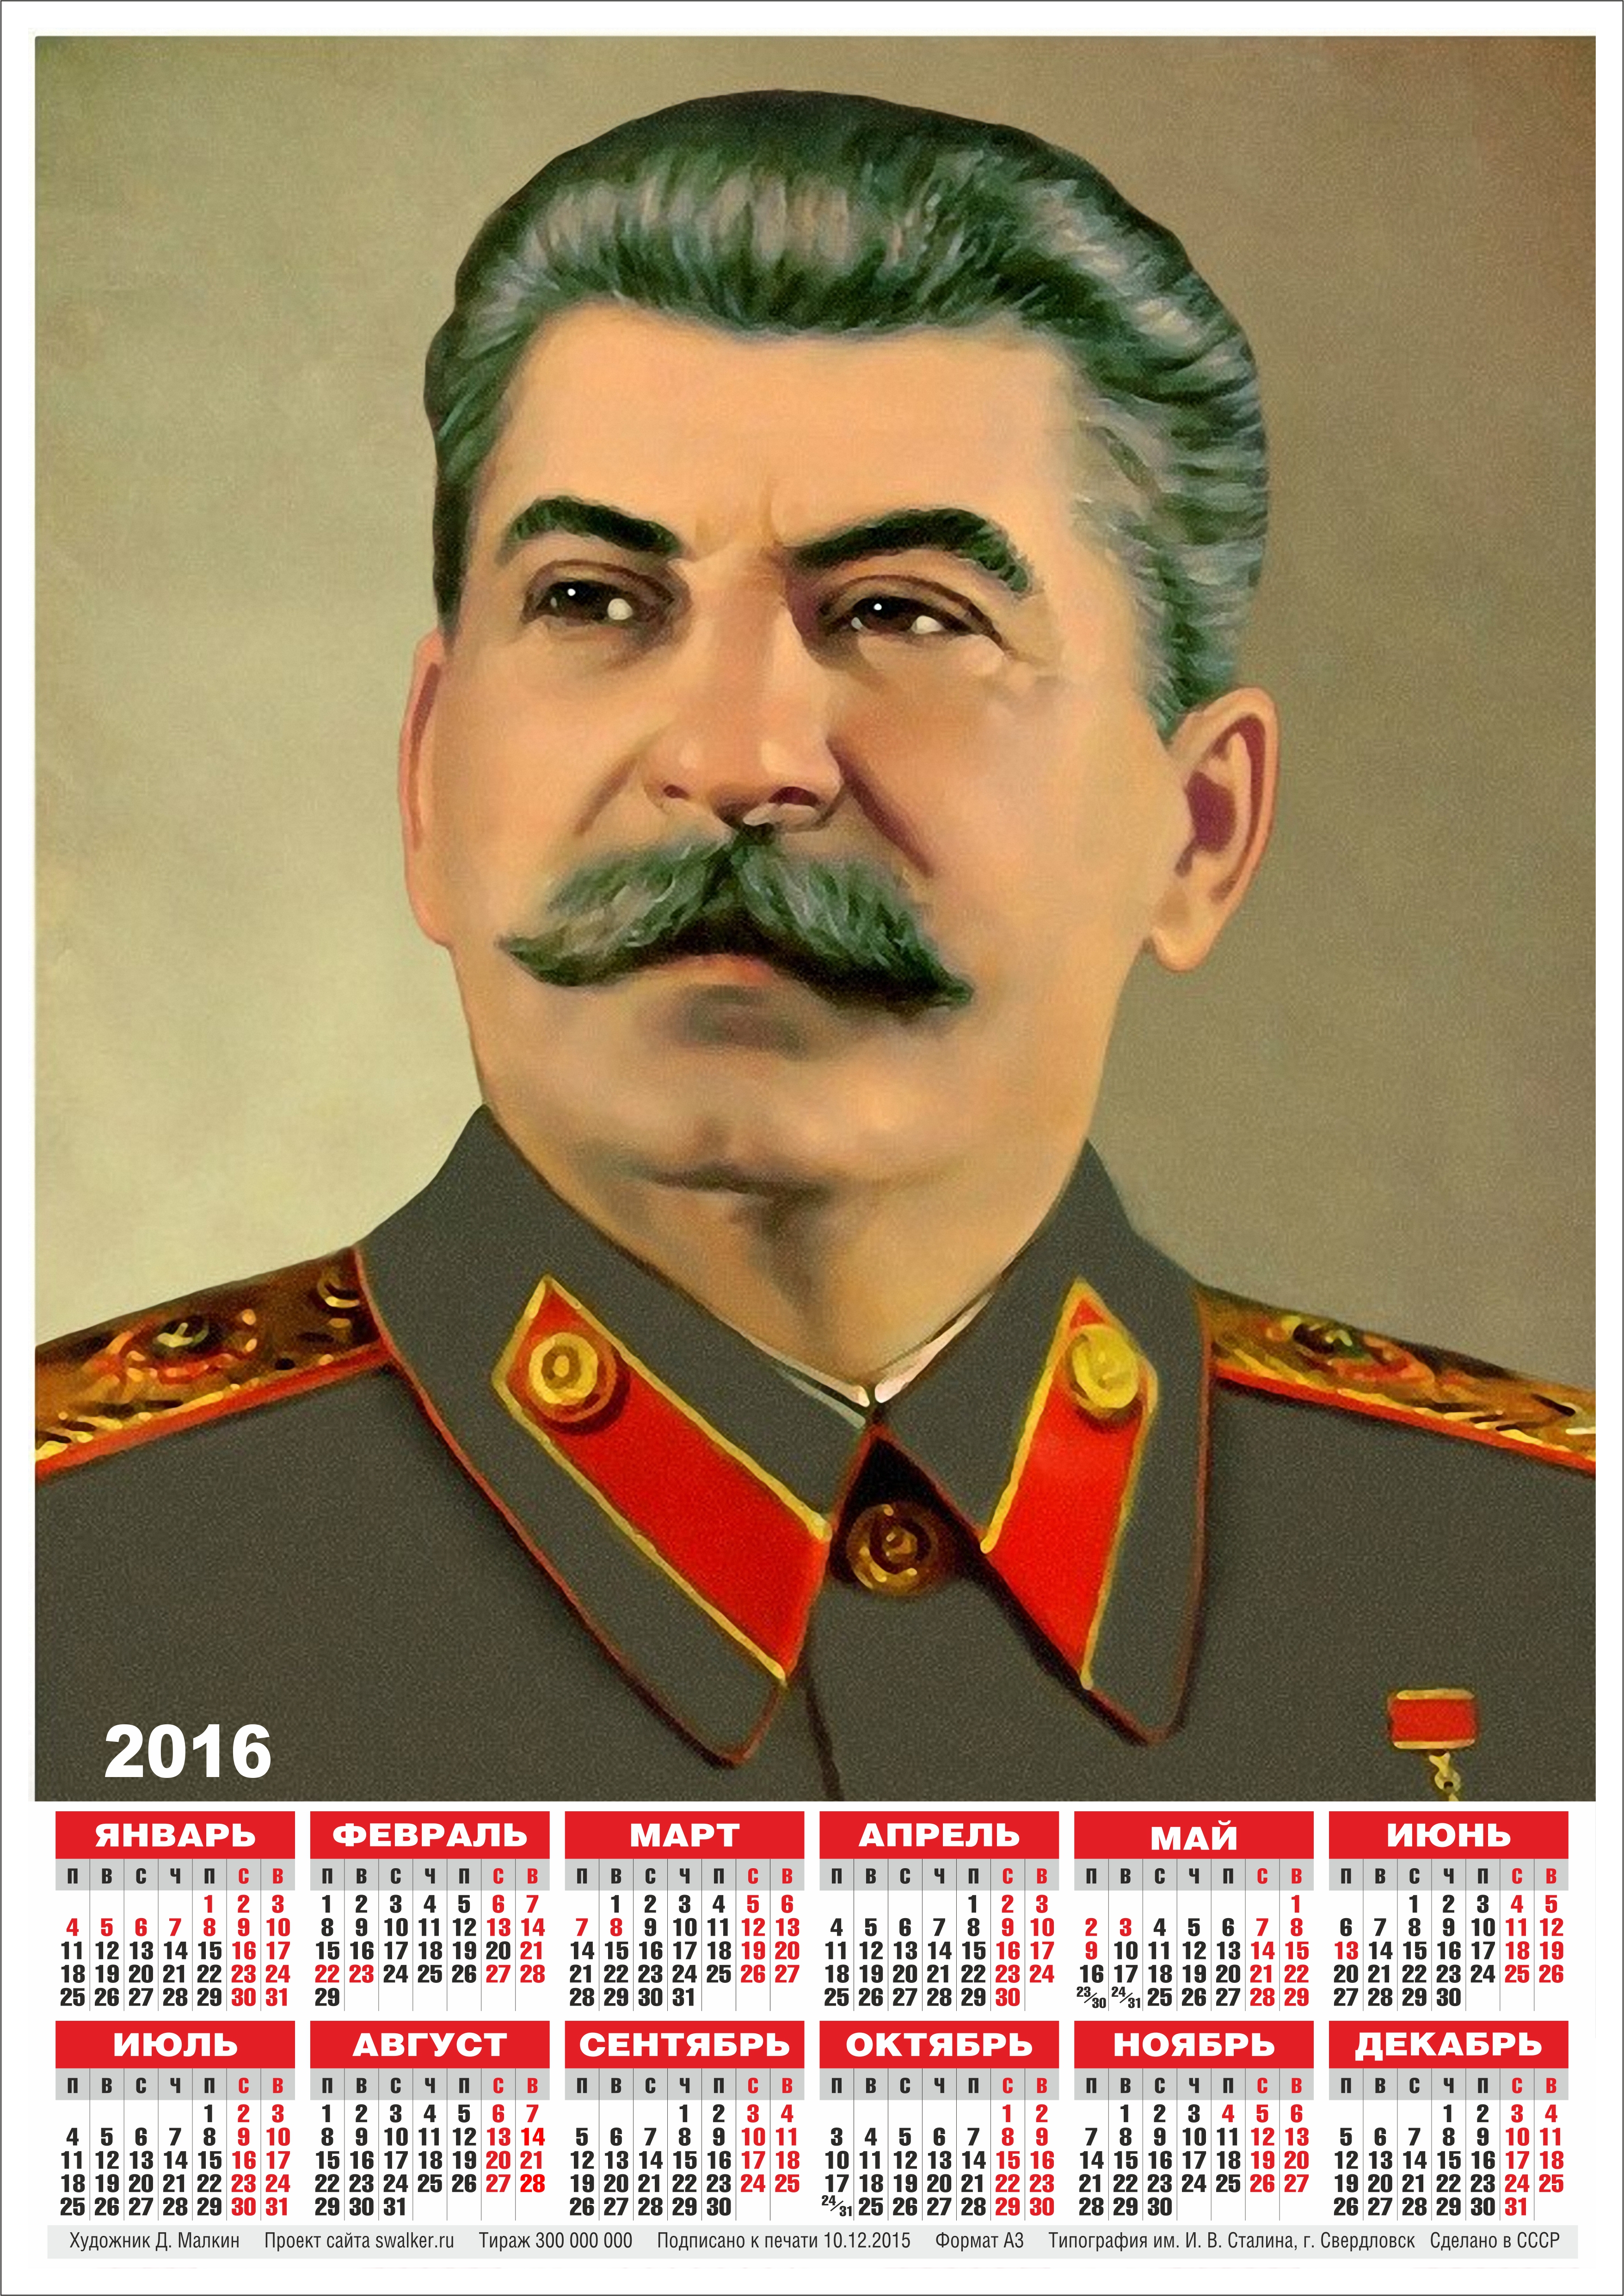 Календари Со Сталиным Купить